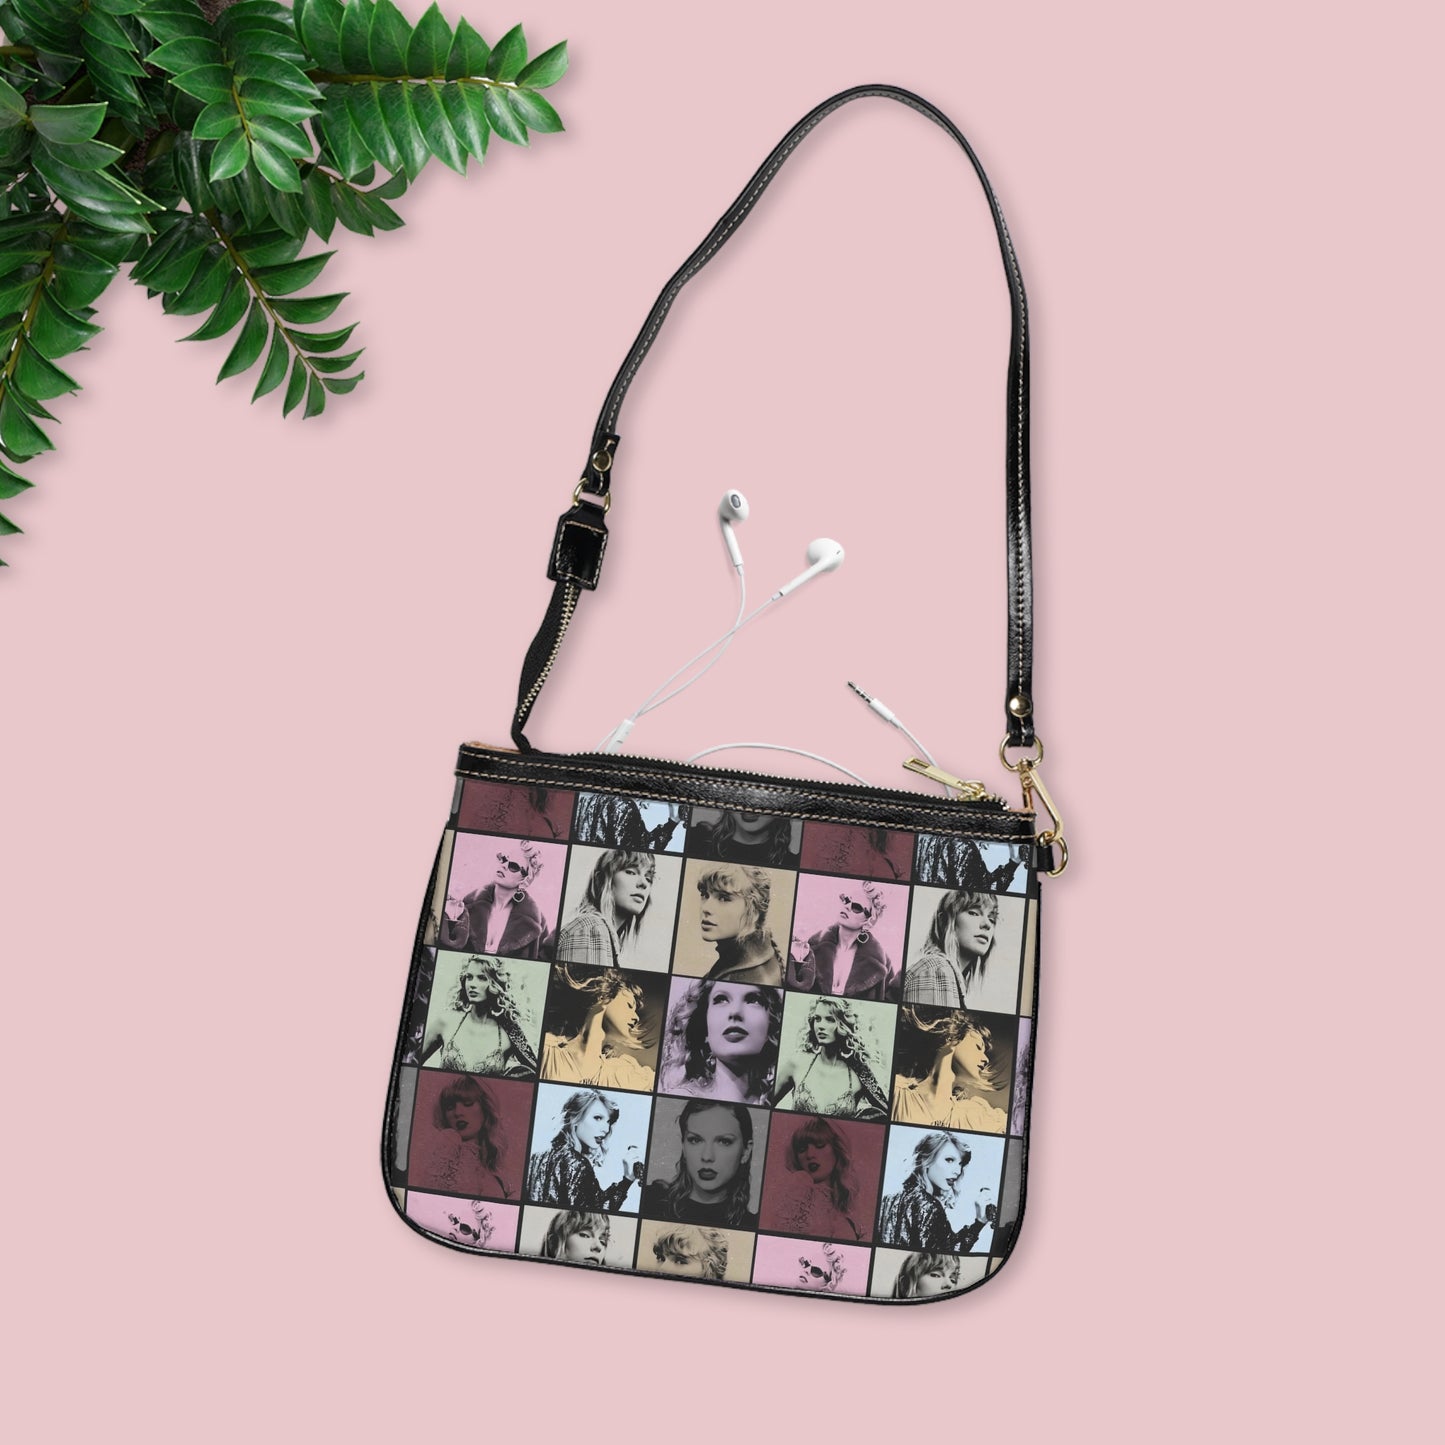 Taylor Swift Eras Collage Small Shoulder Bag